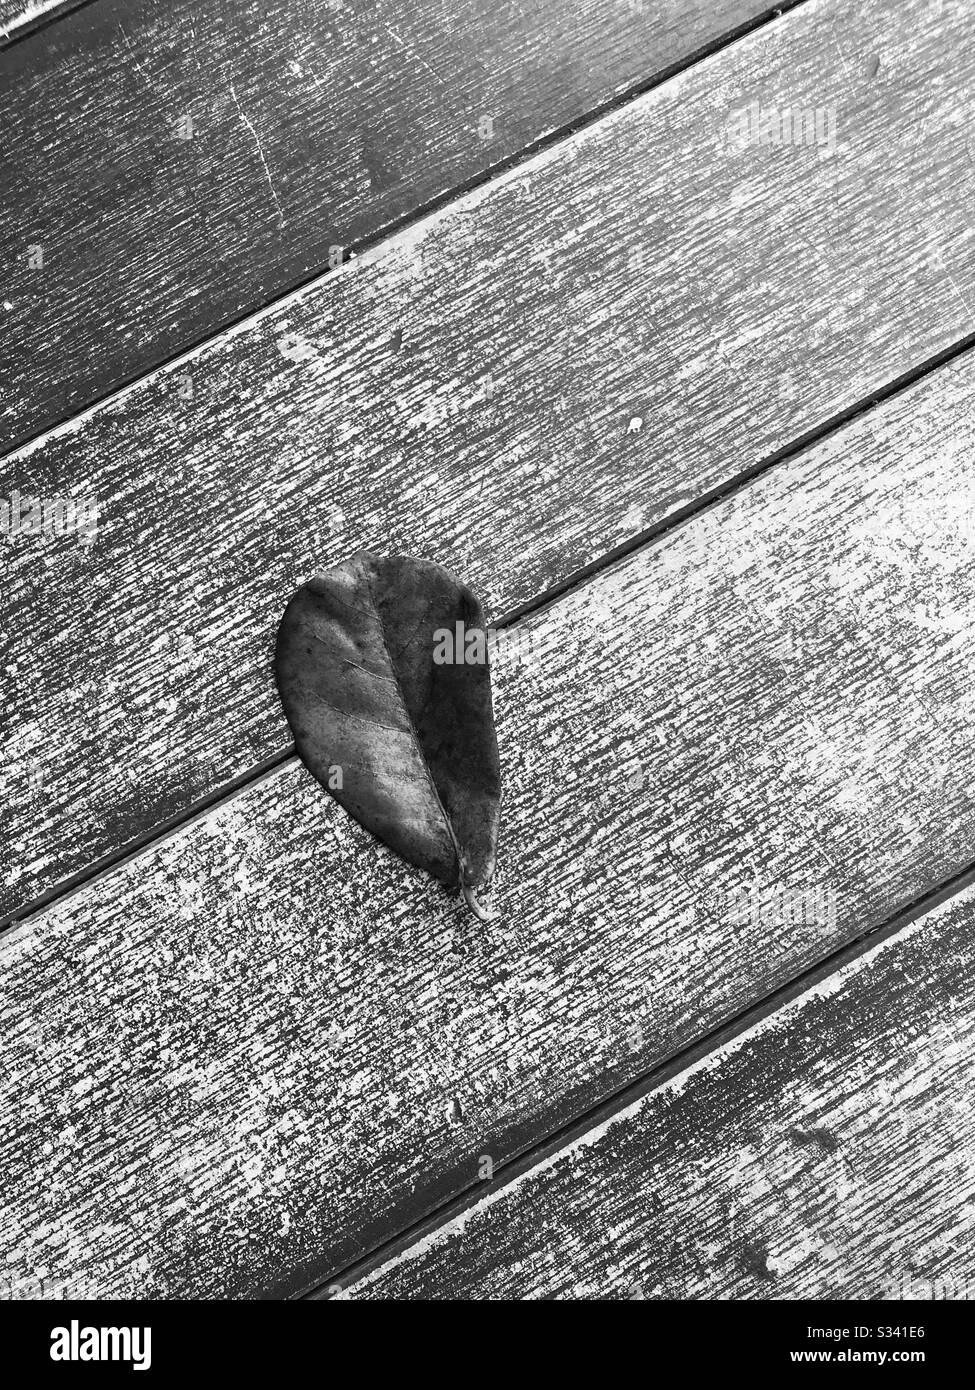 Nahaufnahme des Fallblatts auf log - singapur - gestürzte Blätter auf Holzplatte - trockenes rotes Blatt - tropisches Mandelblatt - Ich mochte diesen PIC mit Schwarz-Weiß-Modus nehmen Stockfoto